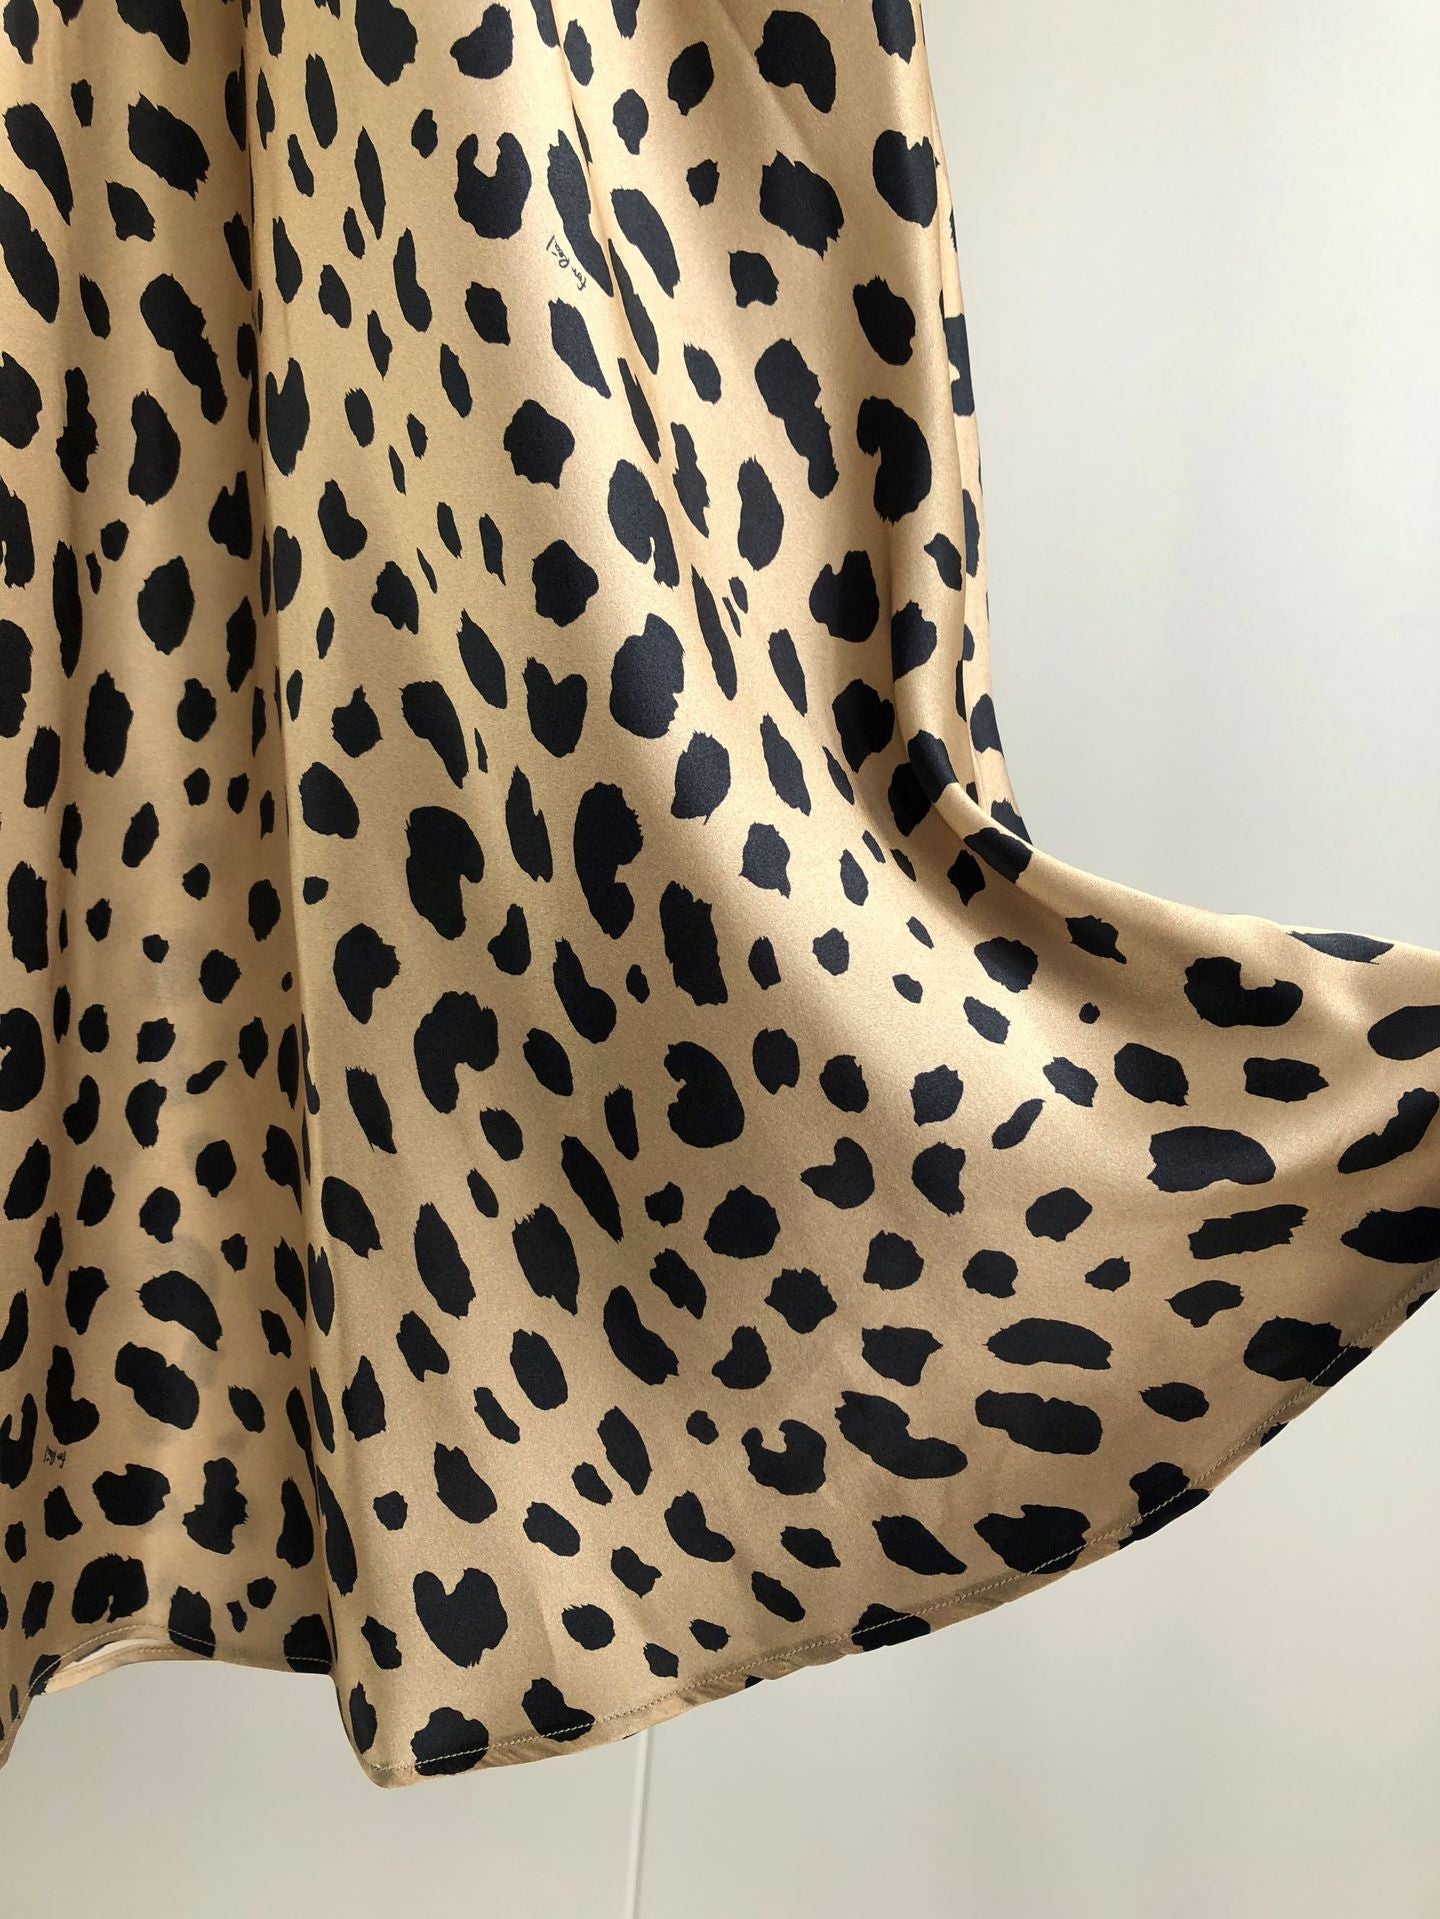 Nonothing|100% pure silk animal print slip skirt